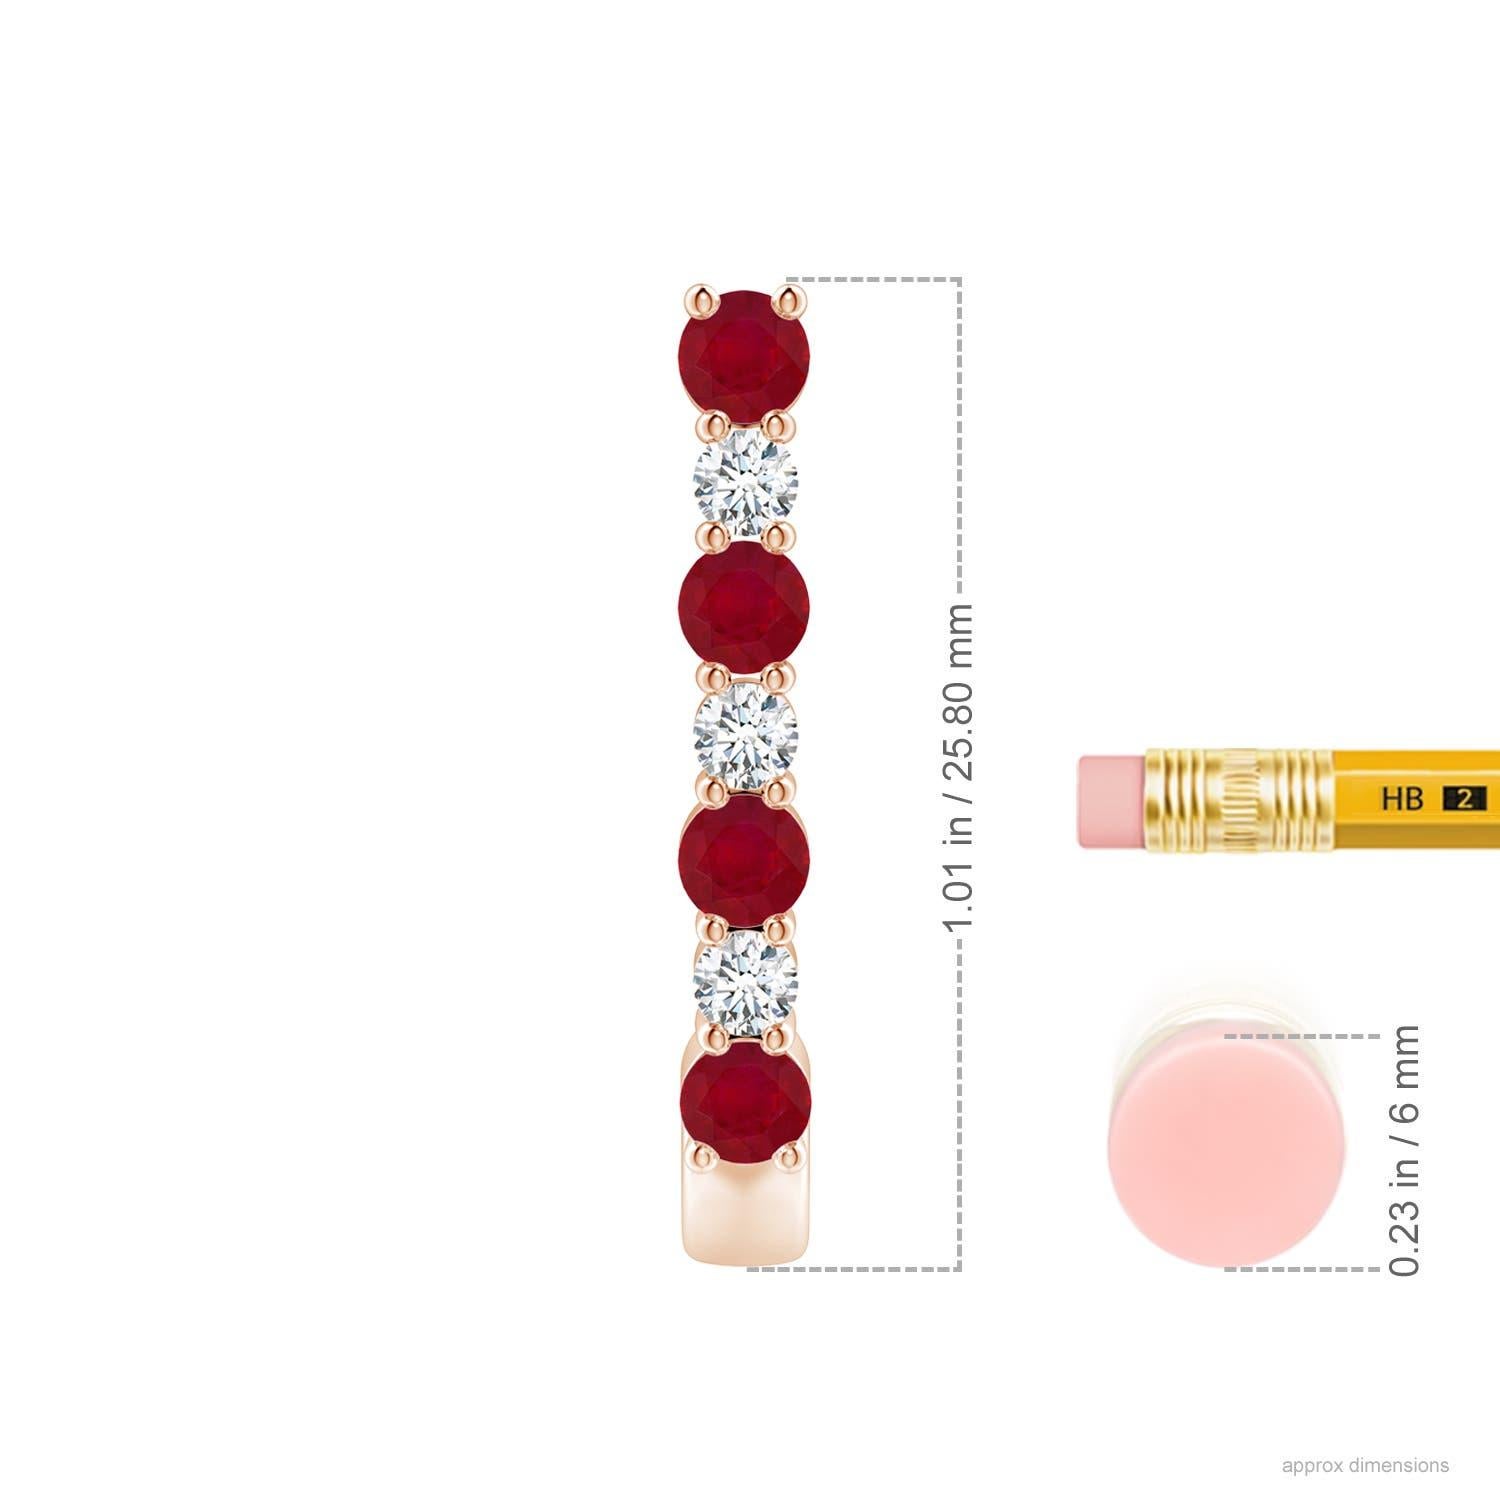 Diese atemberaubenden Rubin- und Diamant-Ohrringe sind aus 14-karätigem Roségold gefertigt. Die J-Ringe sind abwechselnd mit leuchtend roten Rubinen und funkelnden Diamanten besetzt, was einen fesselnden Effekt erzeugt.
Der Rubin ist der